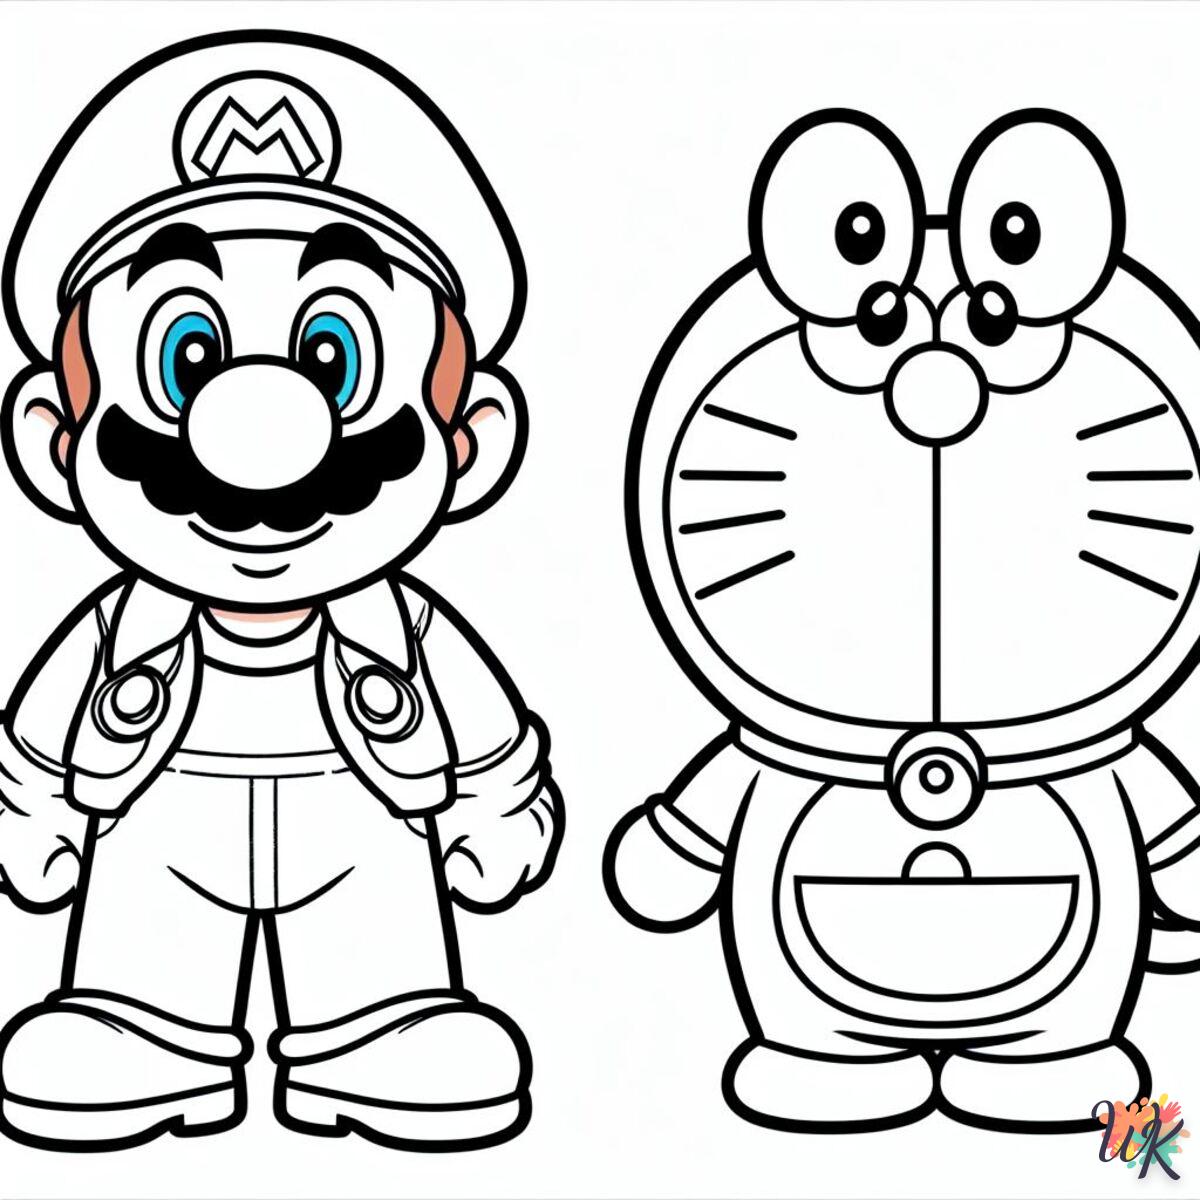 Mario et Doraemon Des Héros qui Font Rêver les Plus Petits